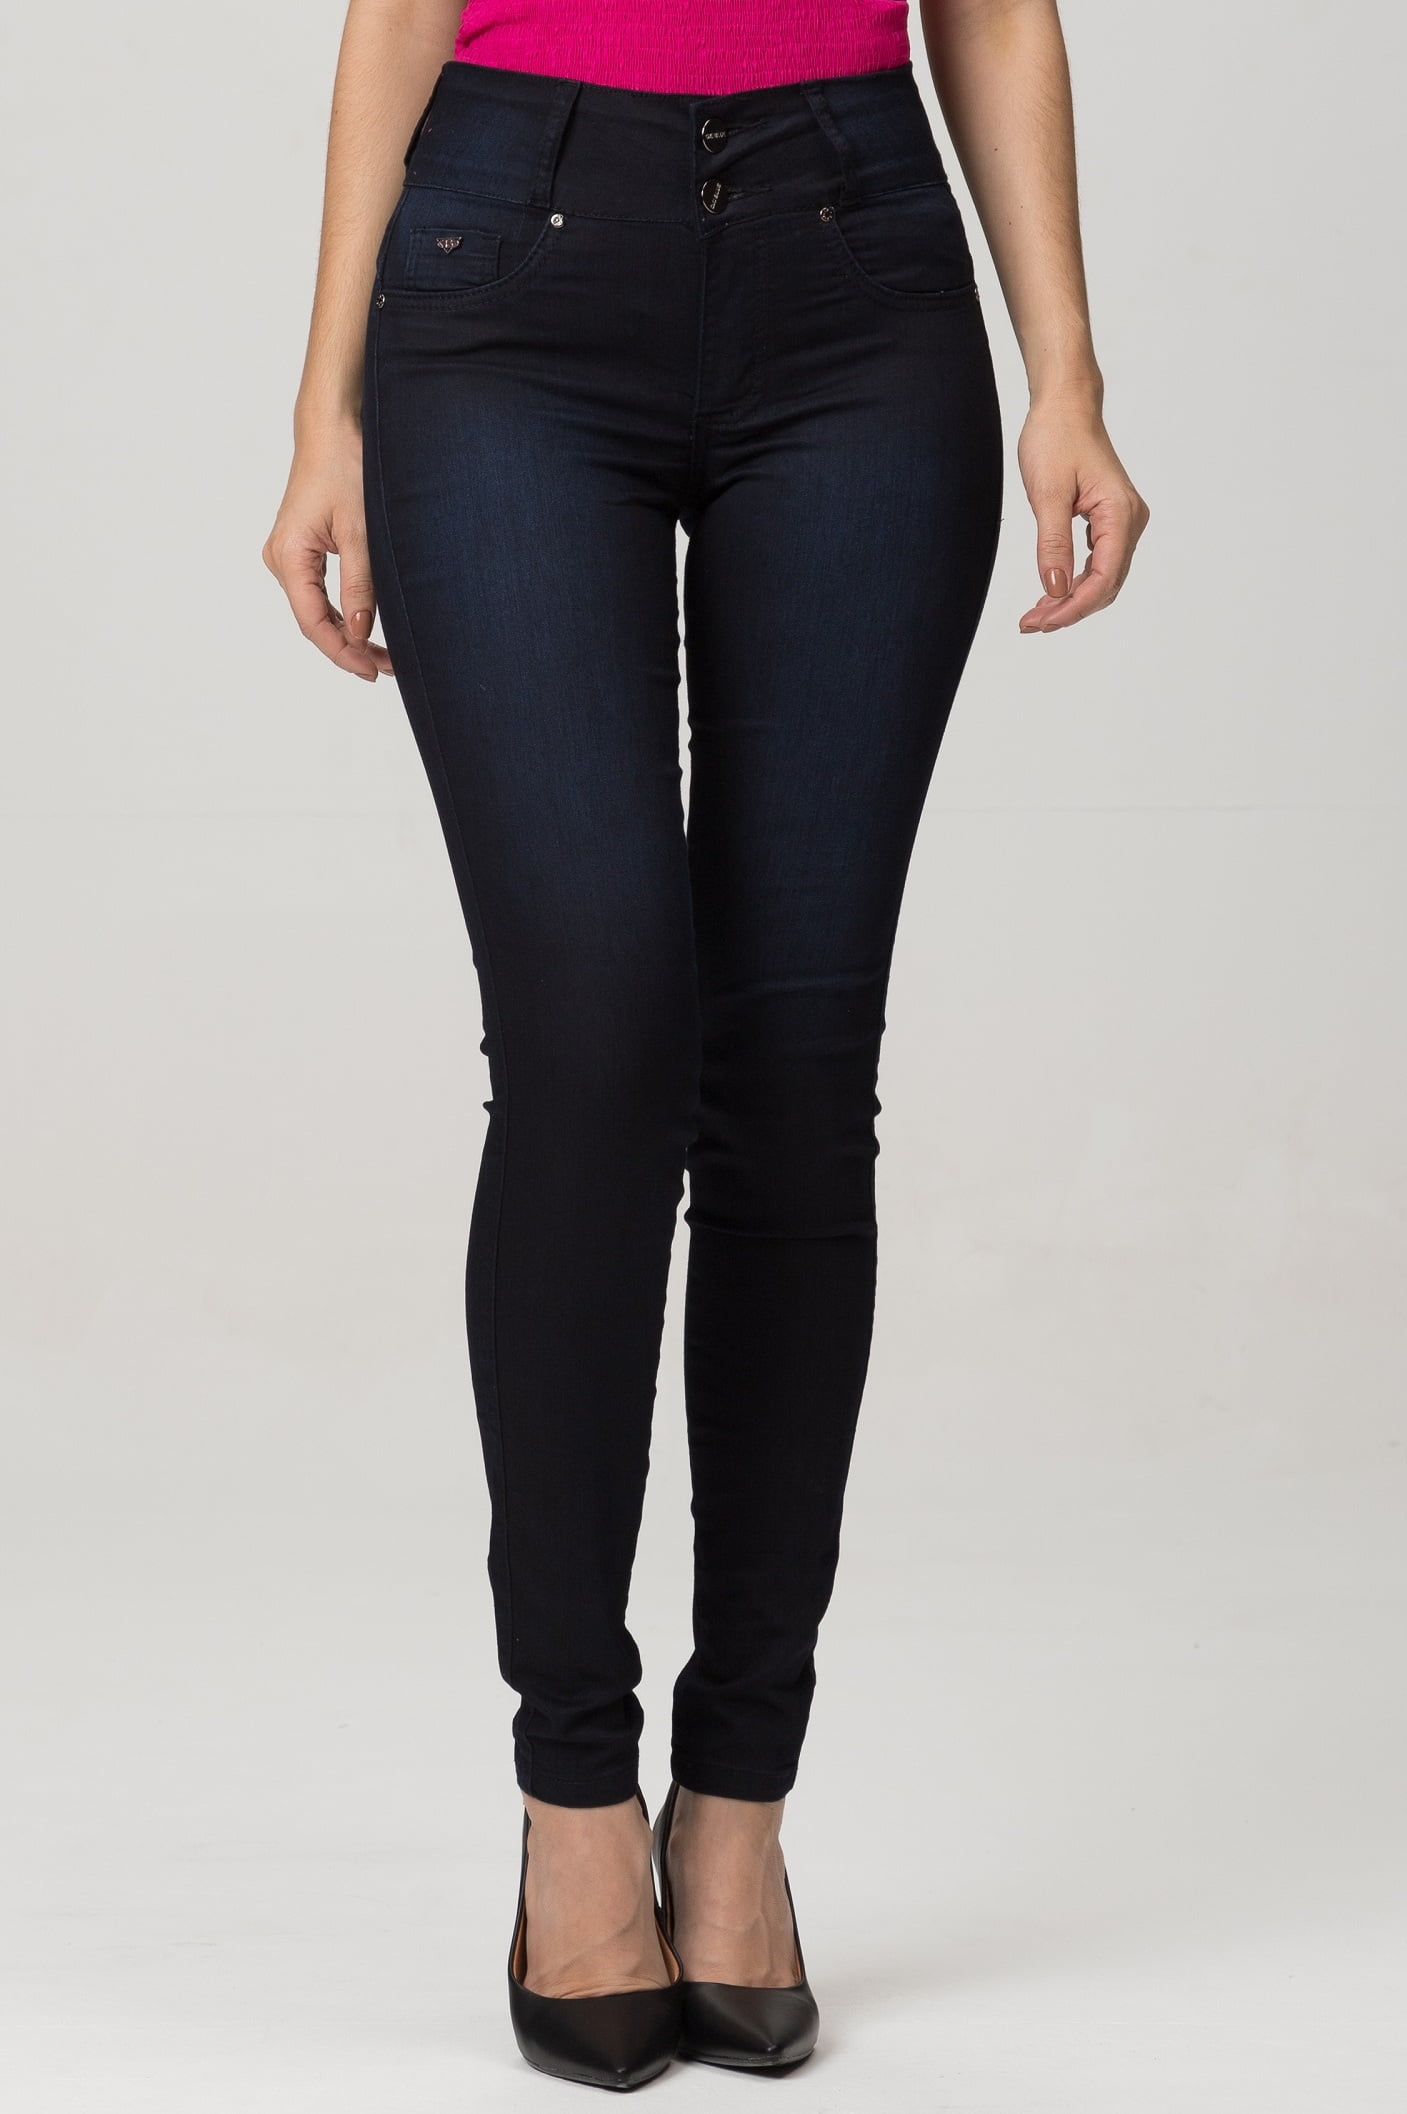 Calça Jeans Feminina Skinny Levanta Bumbum F2021810